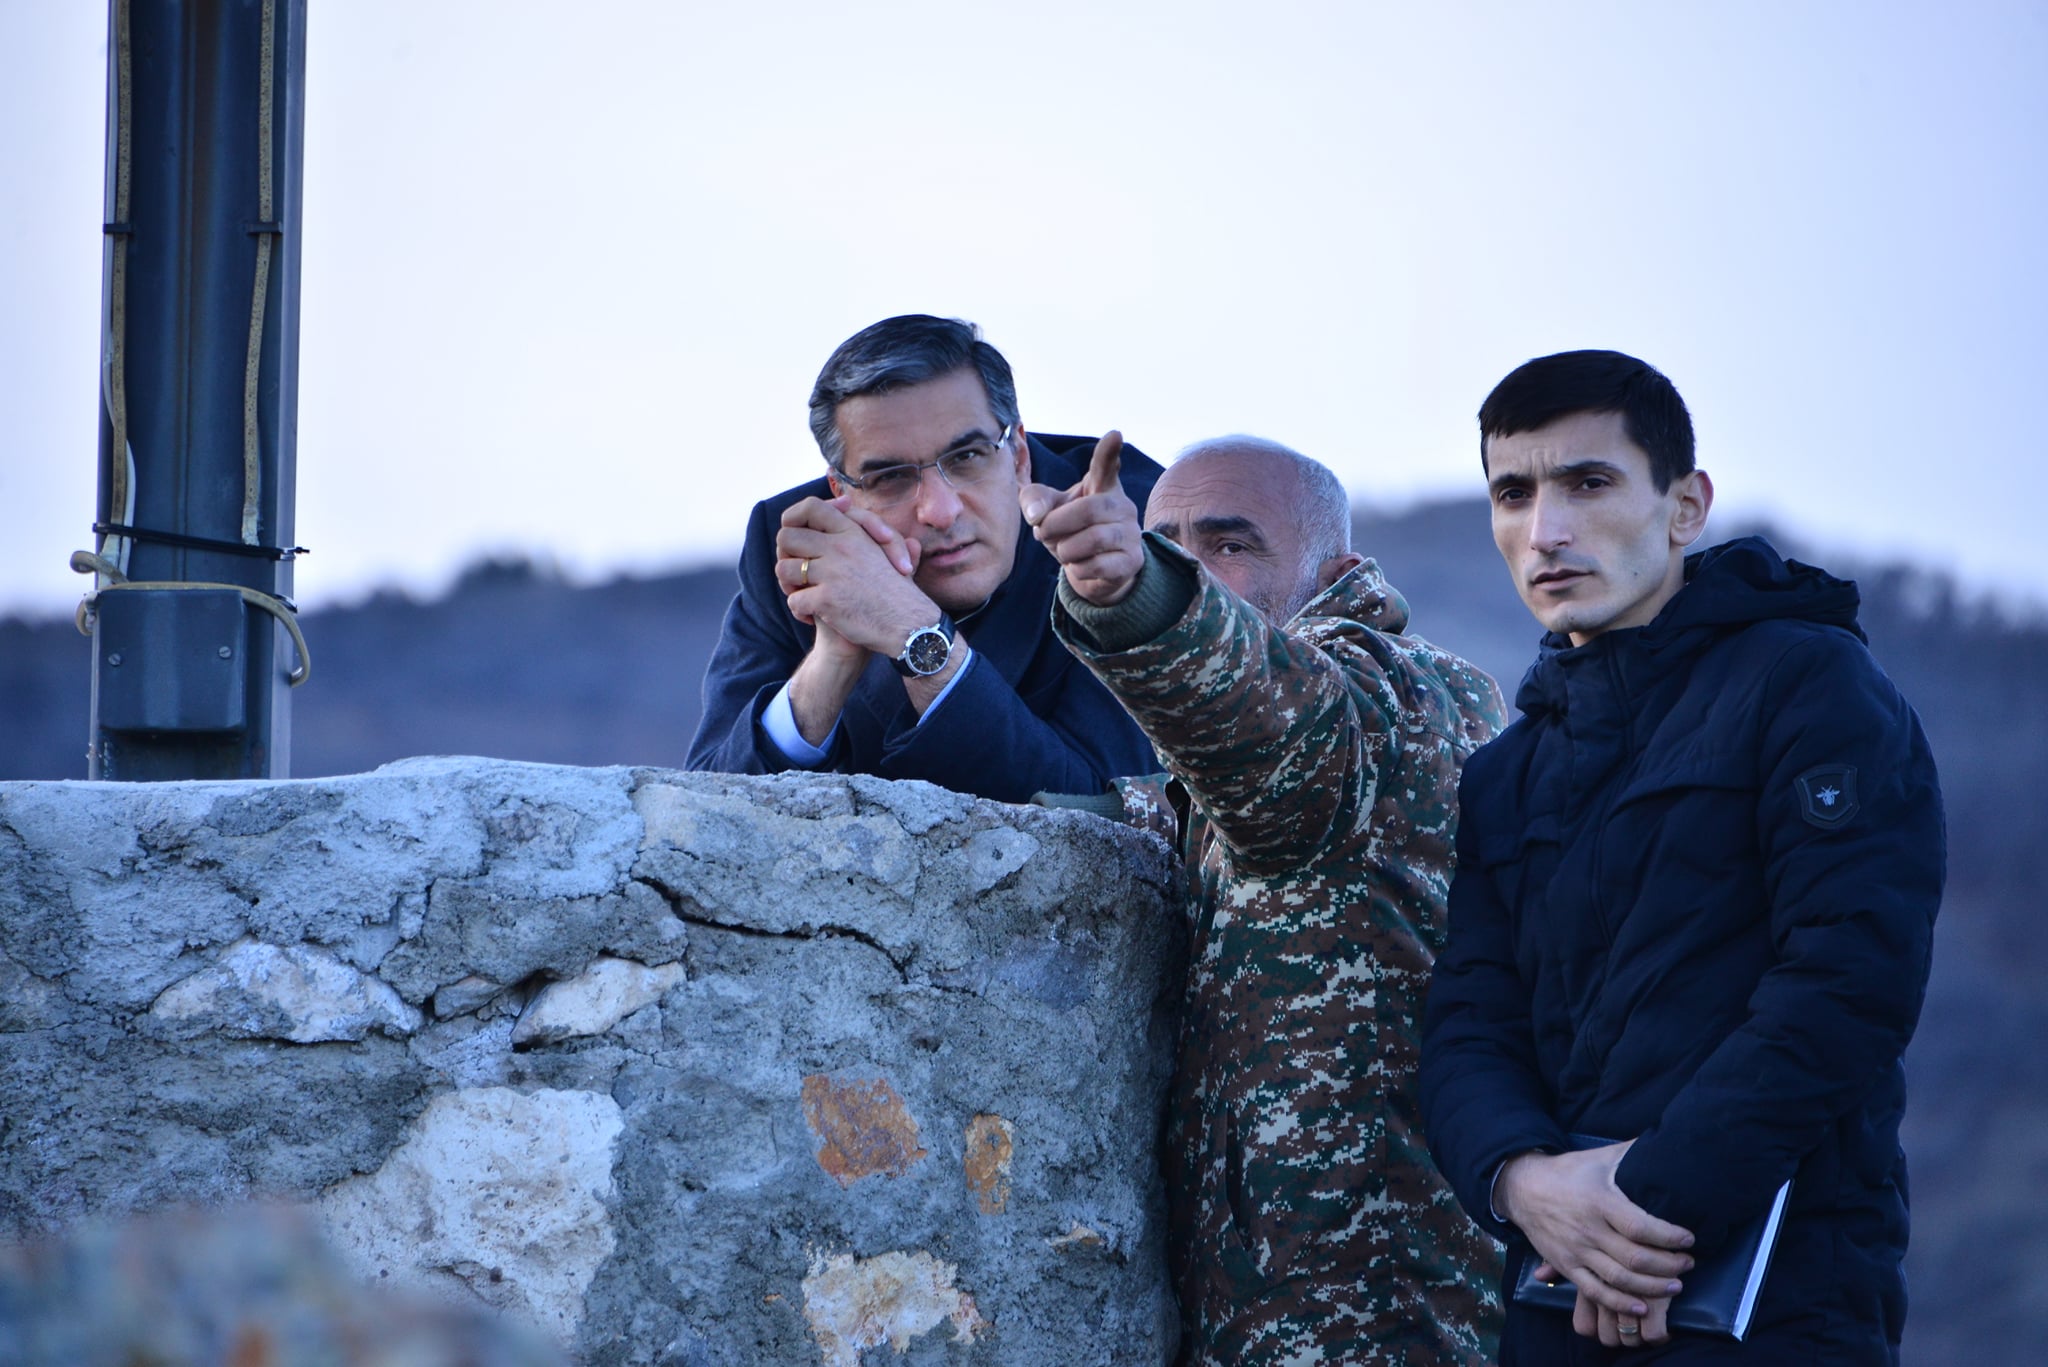 Խաղաղ բնակիչներից բառացիորեն մետրերի վրա ադրբեջանցի զինվորականներ են. ՄԻՊ հայտարարություն